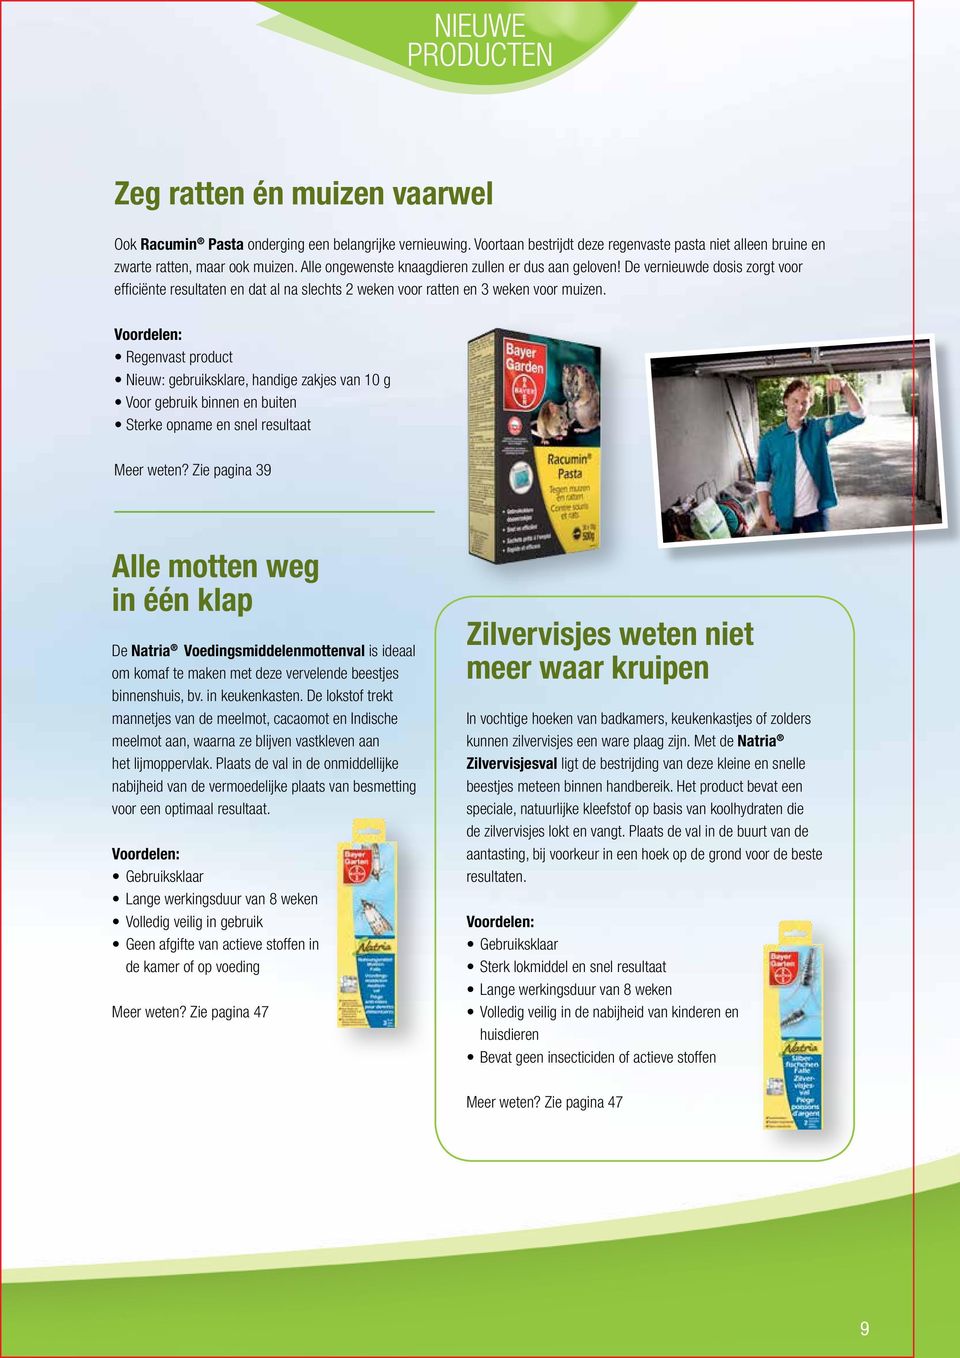 Voordelen: Regenvast product Nieuw: gebruiksklare, handige zakjes van 10 g Voor gebruik binnen en buiten Sterke opname en snel resultaat Meer weten?